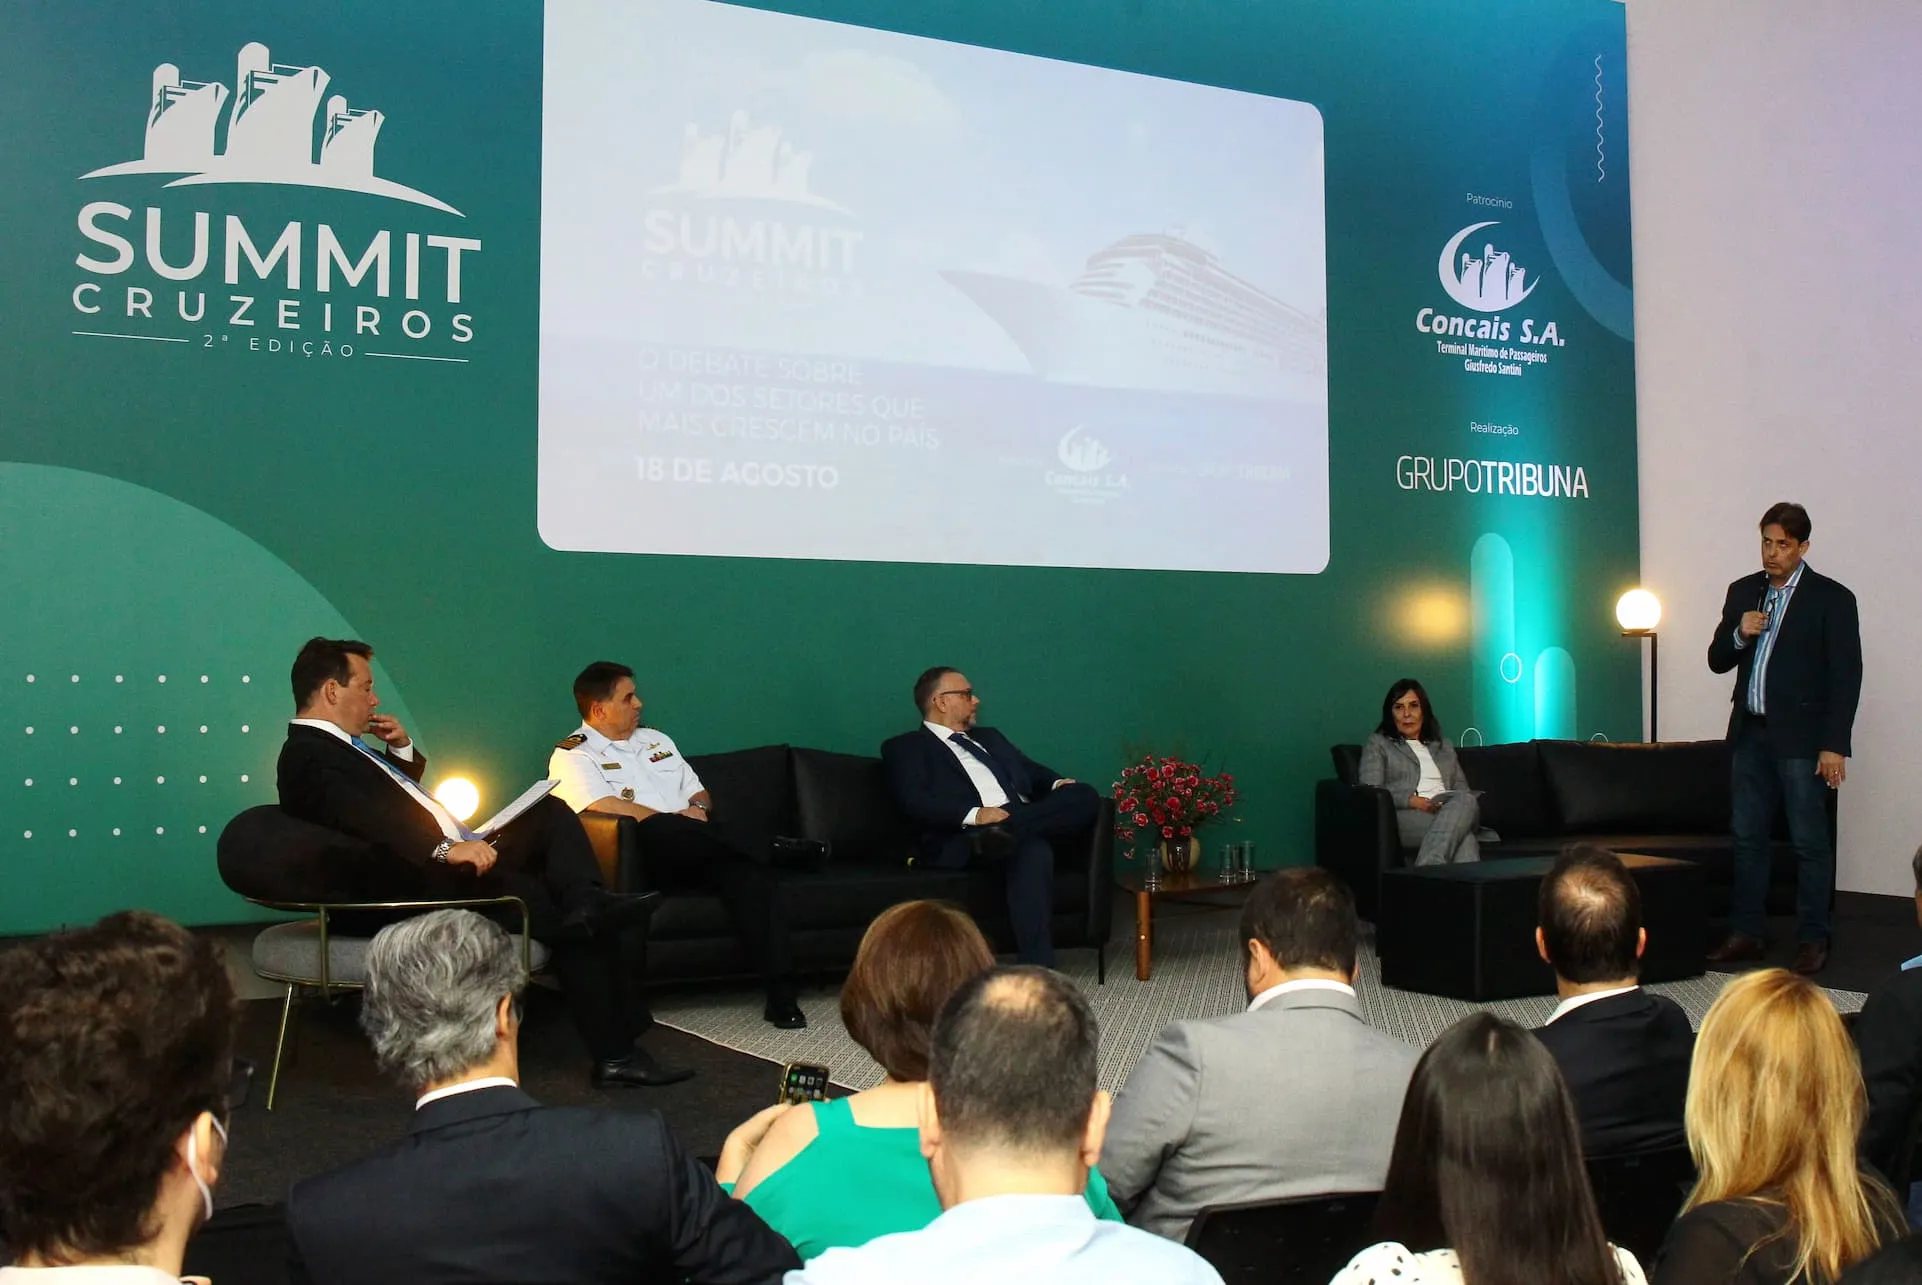 Realizado no auditório do Grupo Tribuna, o Summit Cruzeiros reuniu importantes nomes nacionais do setor